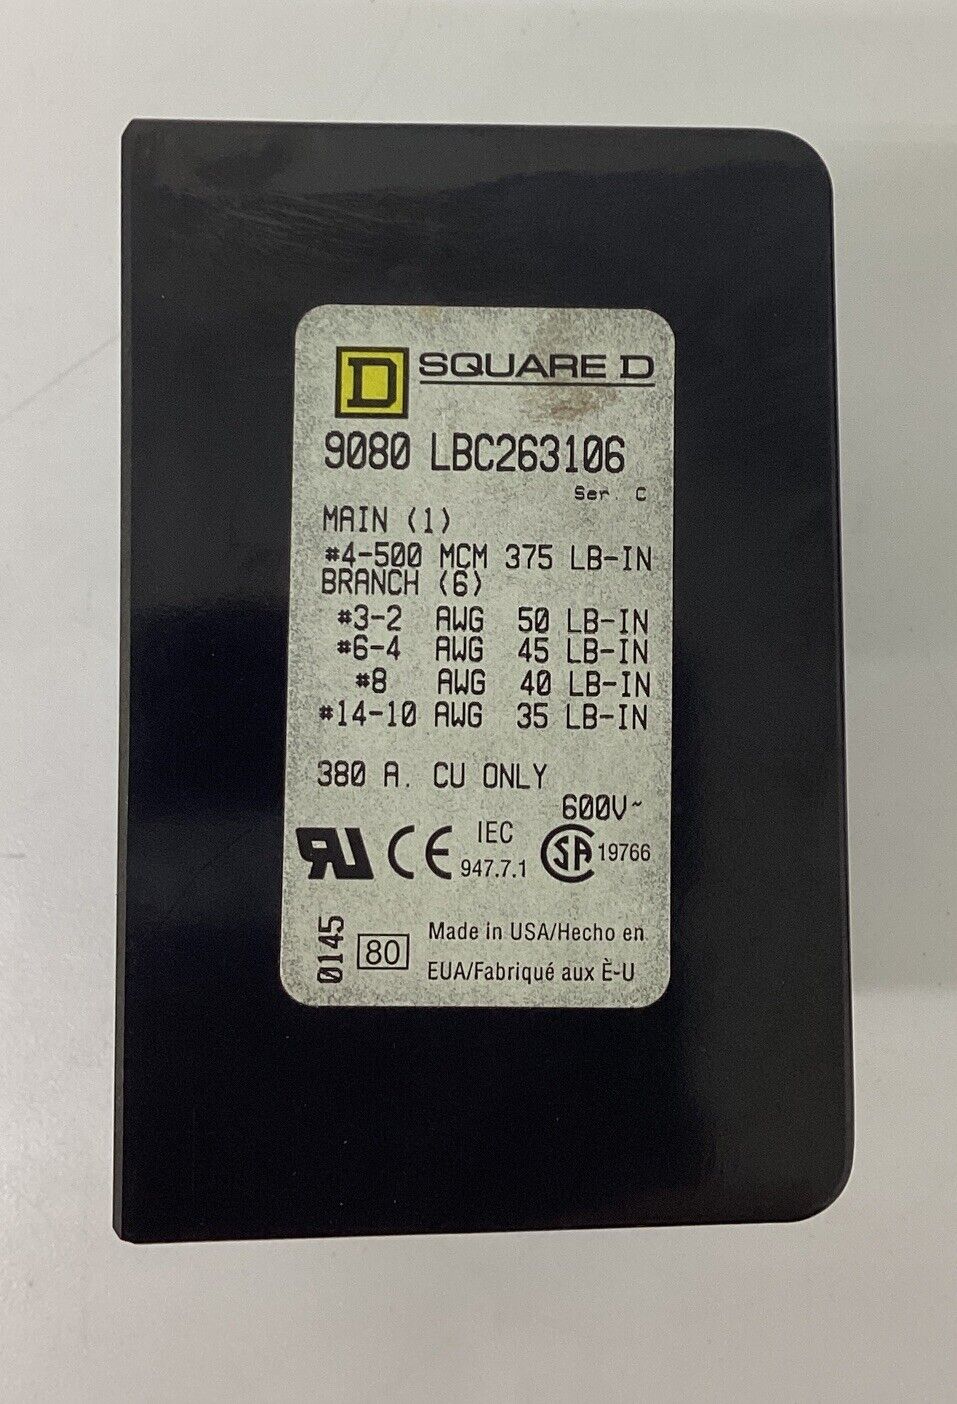 Square D 90B0-LBC263206 Power Distribution Box (CL106) - 0